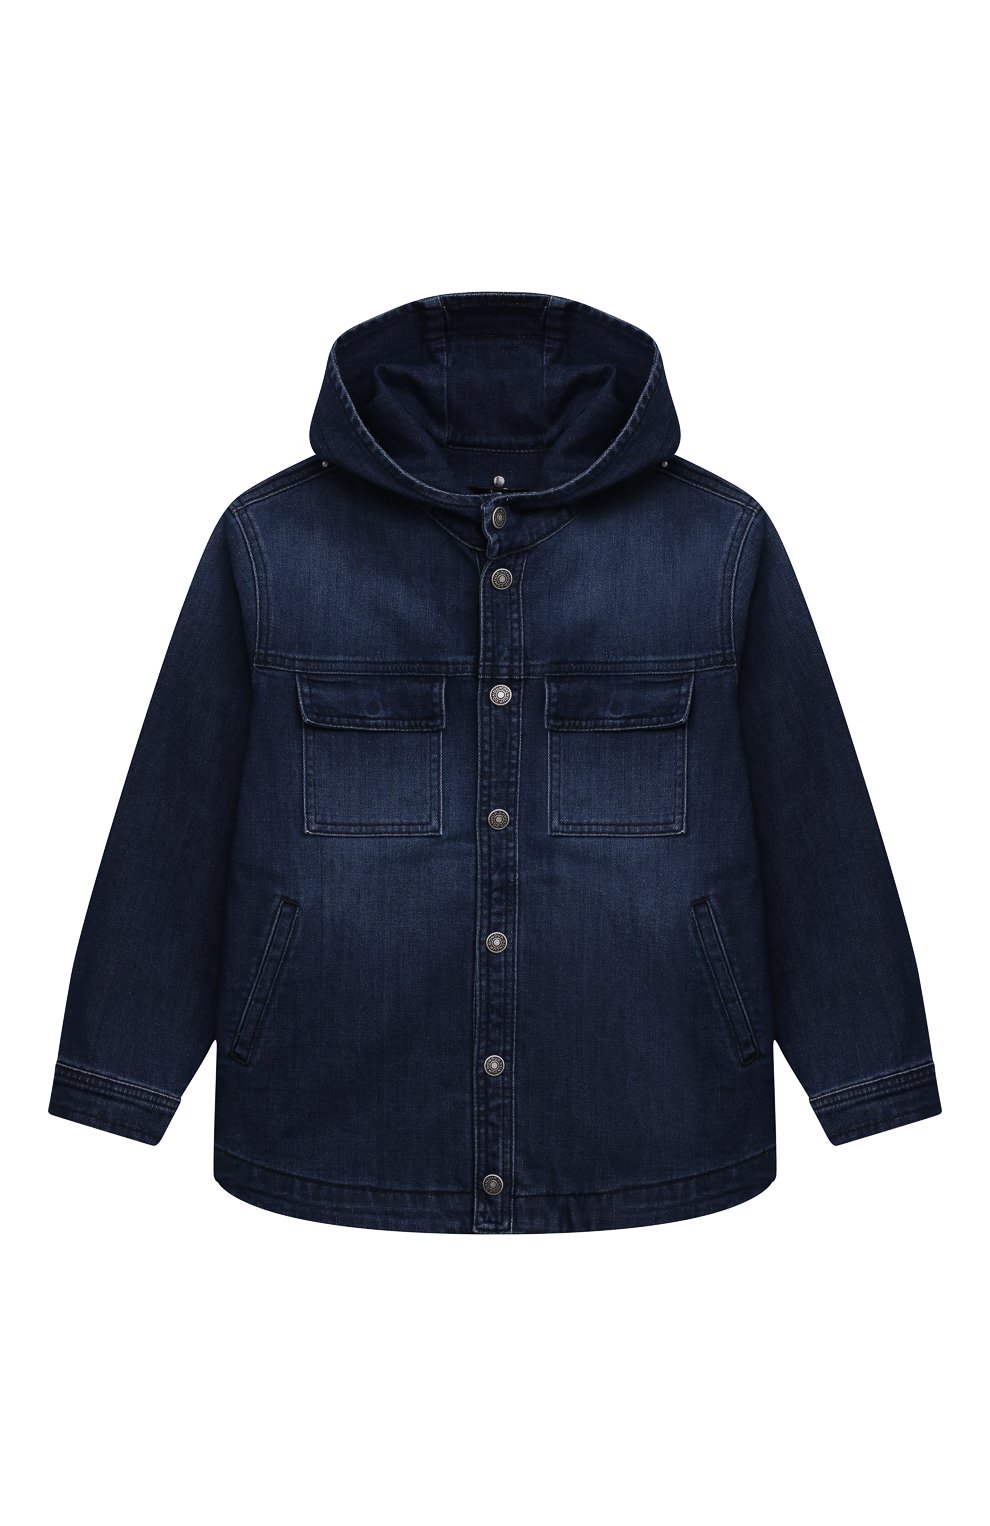 Джинсовая куртка DONDUP KIDS детского синего цвета — купить в интернет ...